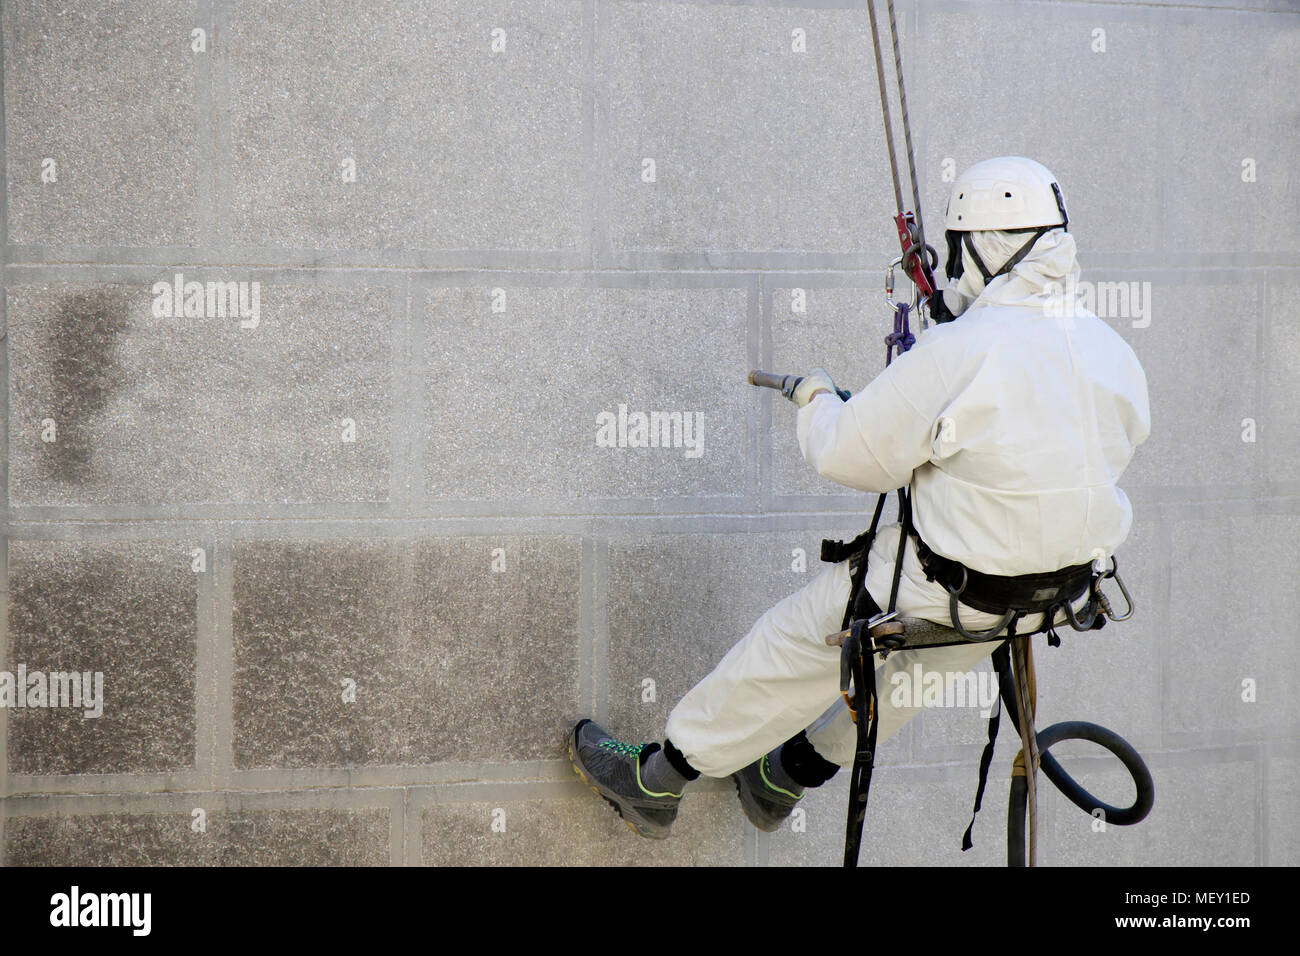 Corda facciata di accesso di manutenzione; un lavoratore indossando un abbigliamento protettivo pulizia di un esterno in pietra con attrezzature di sabbiatura Foto Stock